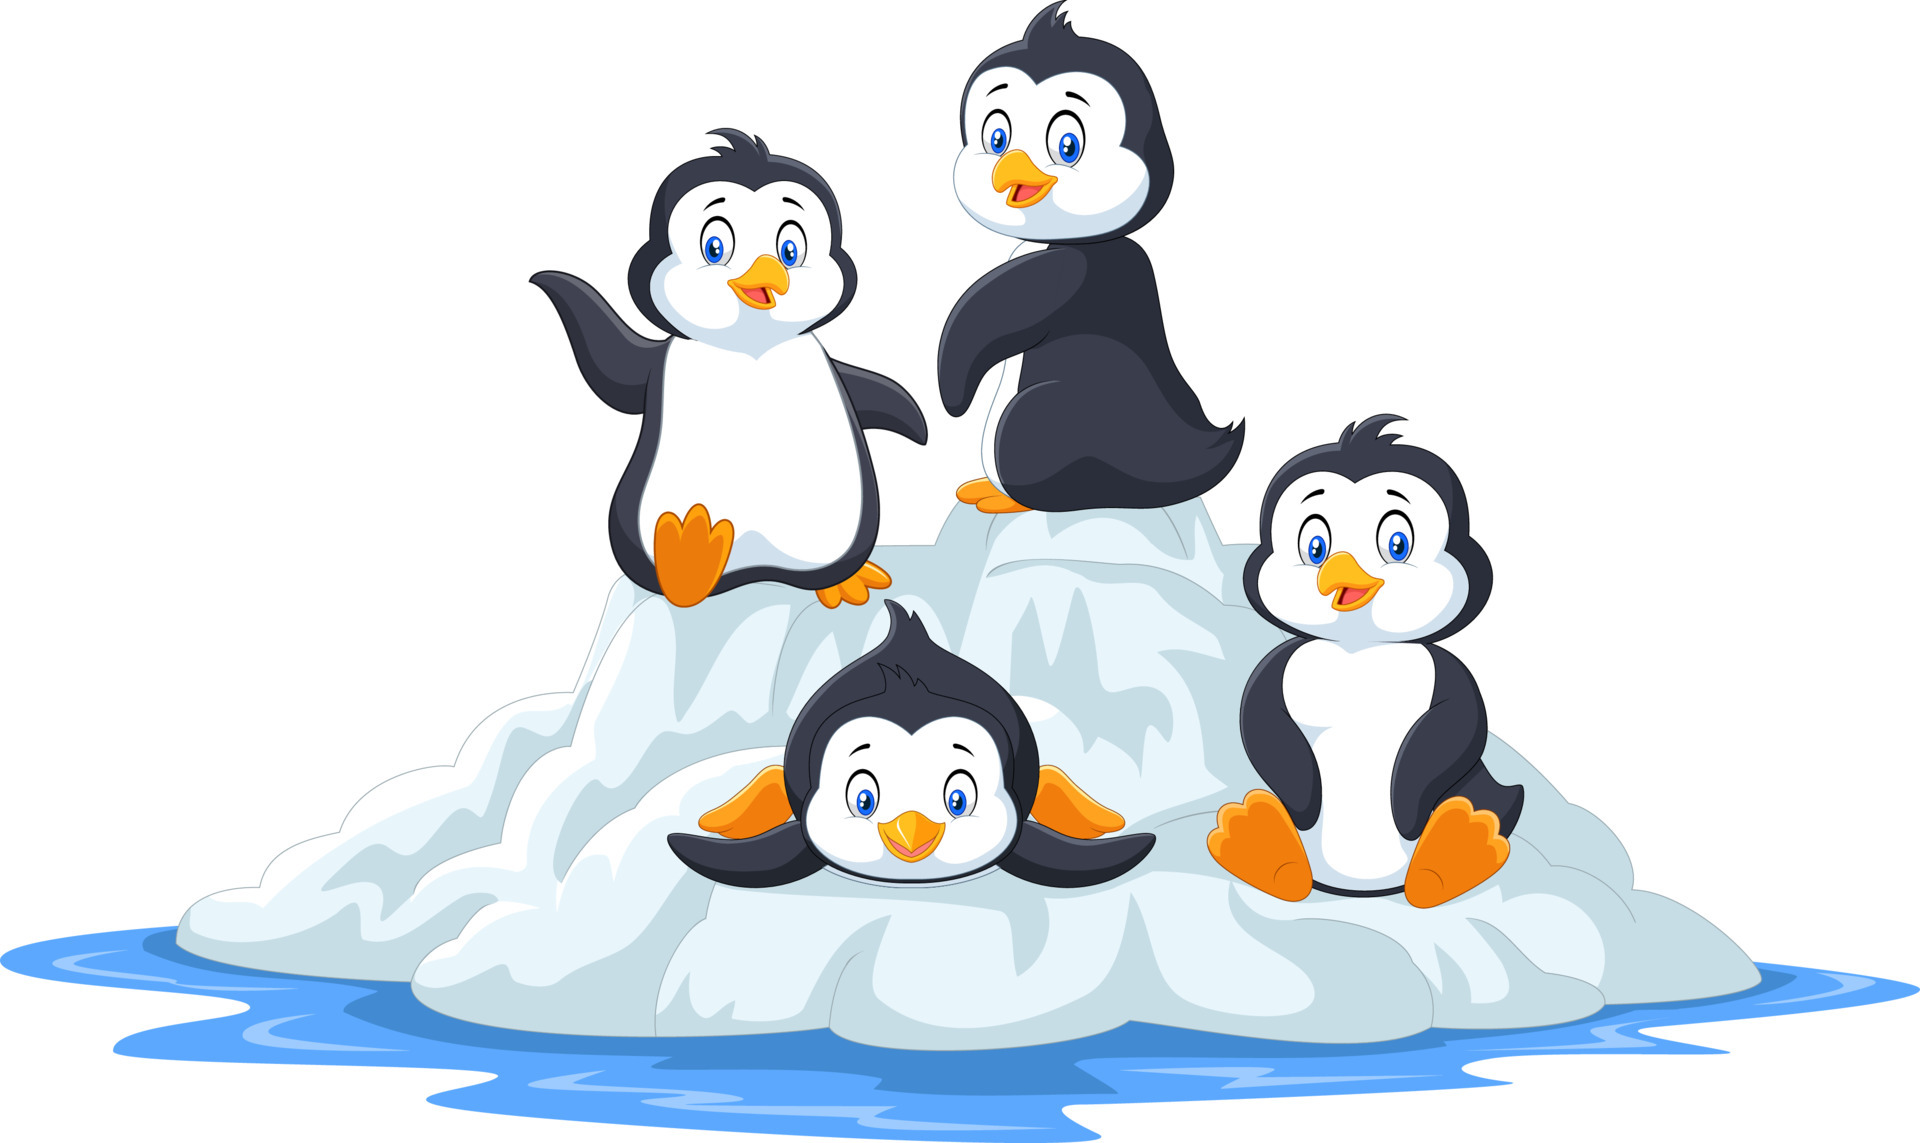 Unfreeze Penguins, Esses pinguins simpáticos precisam ser liberados dos  blocos de gelo  By Jogos123